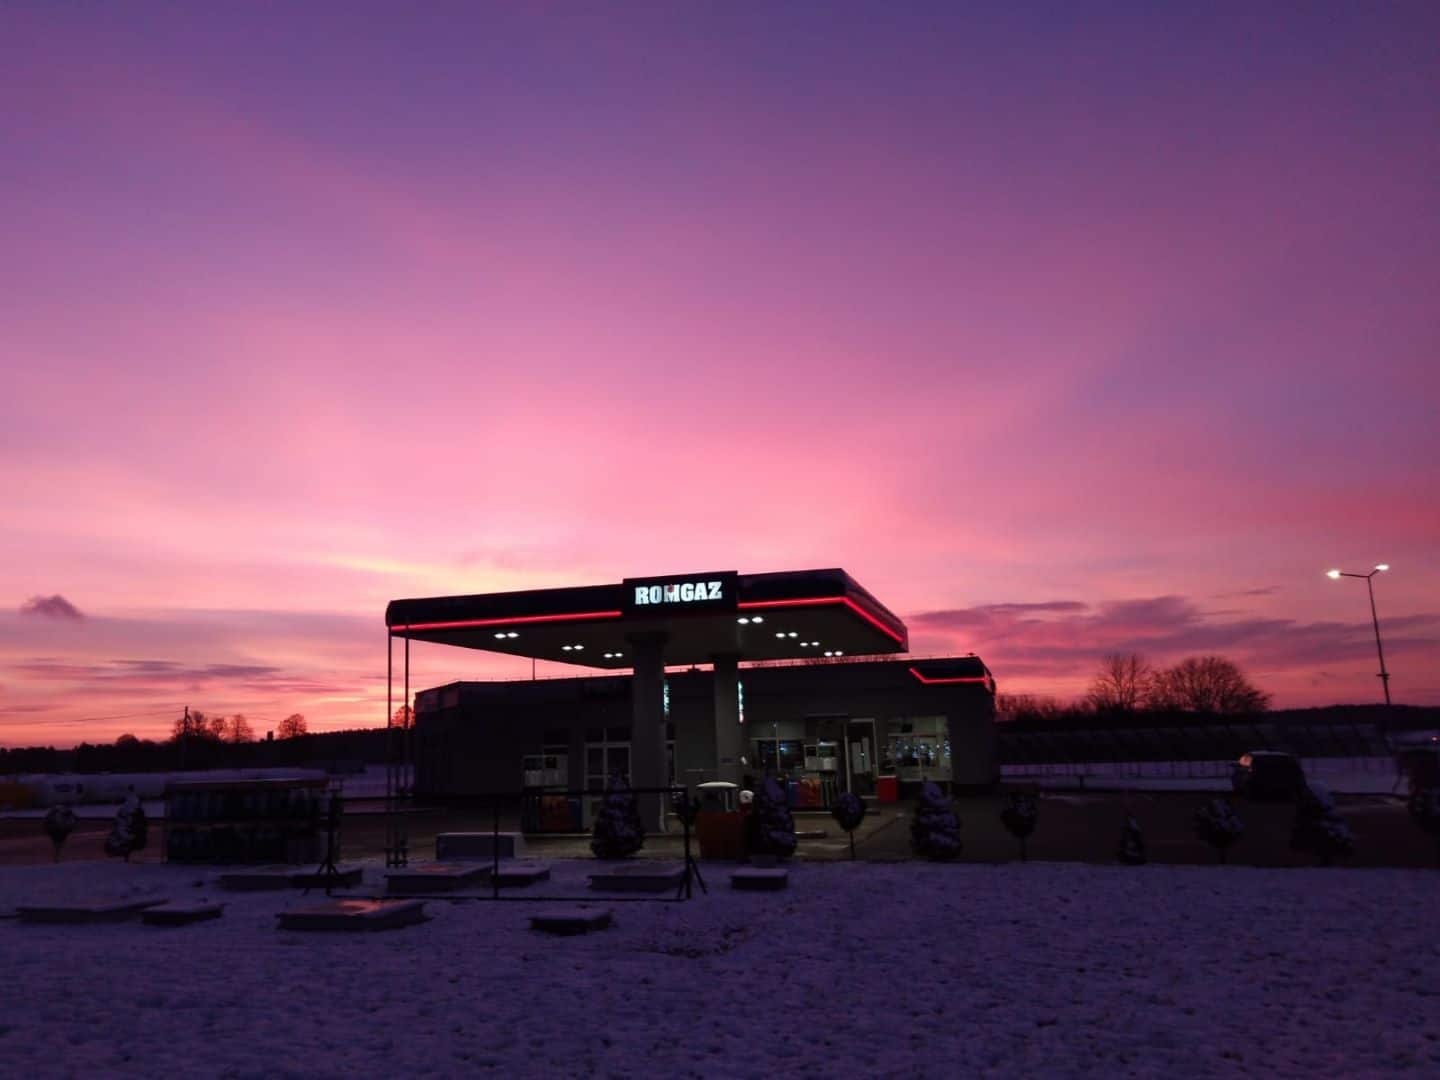 Stacja benzynowa pod tętniącym życiem różowym niebem zachodzącego słońca, ze śniegiem na ziemi i podświetlonym znakiem stacji.